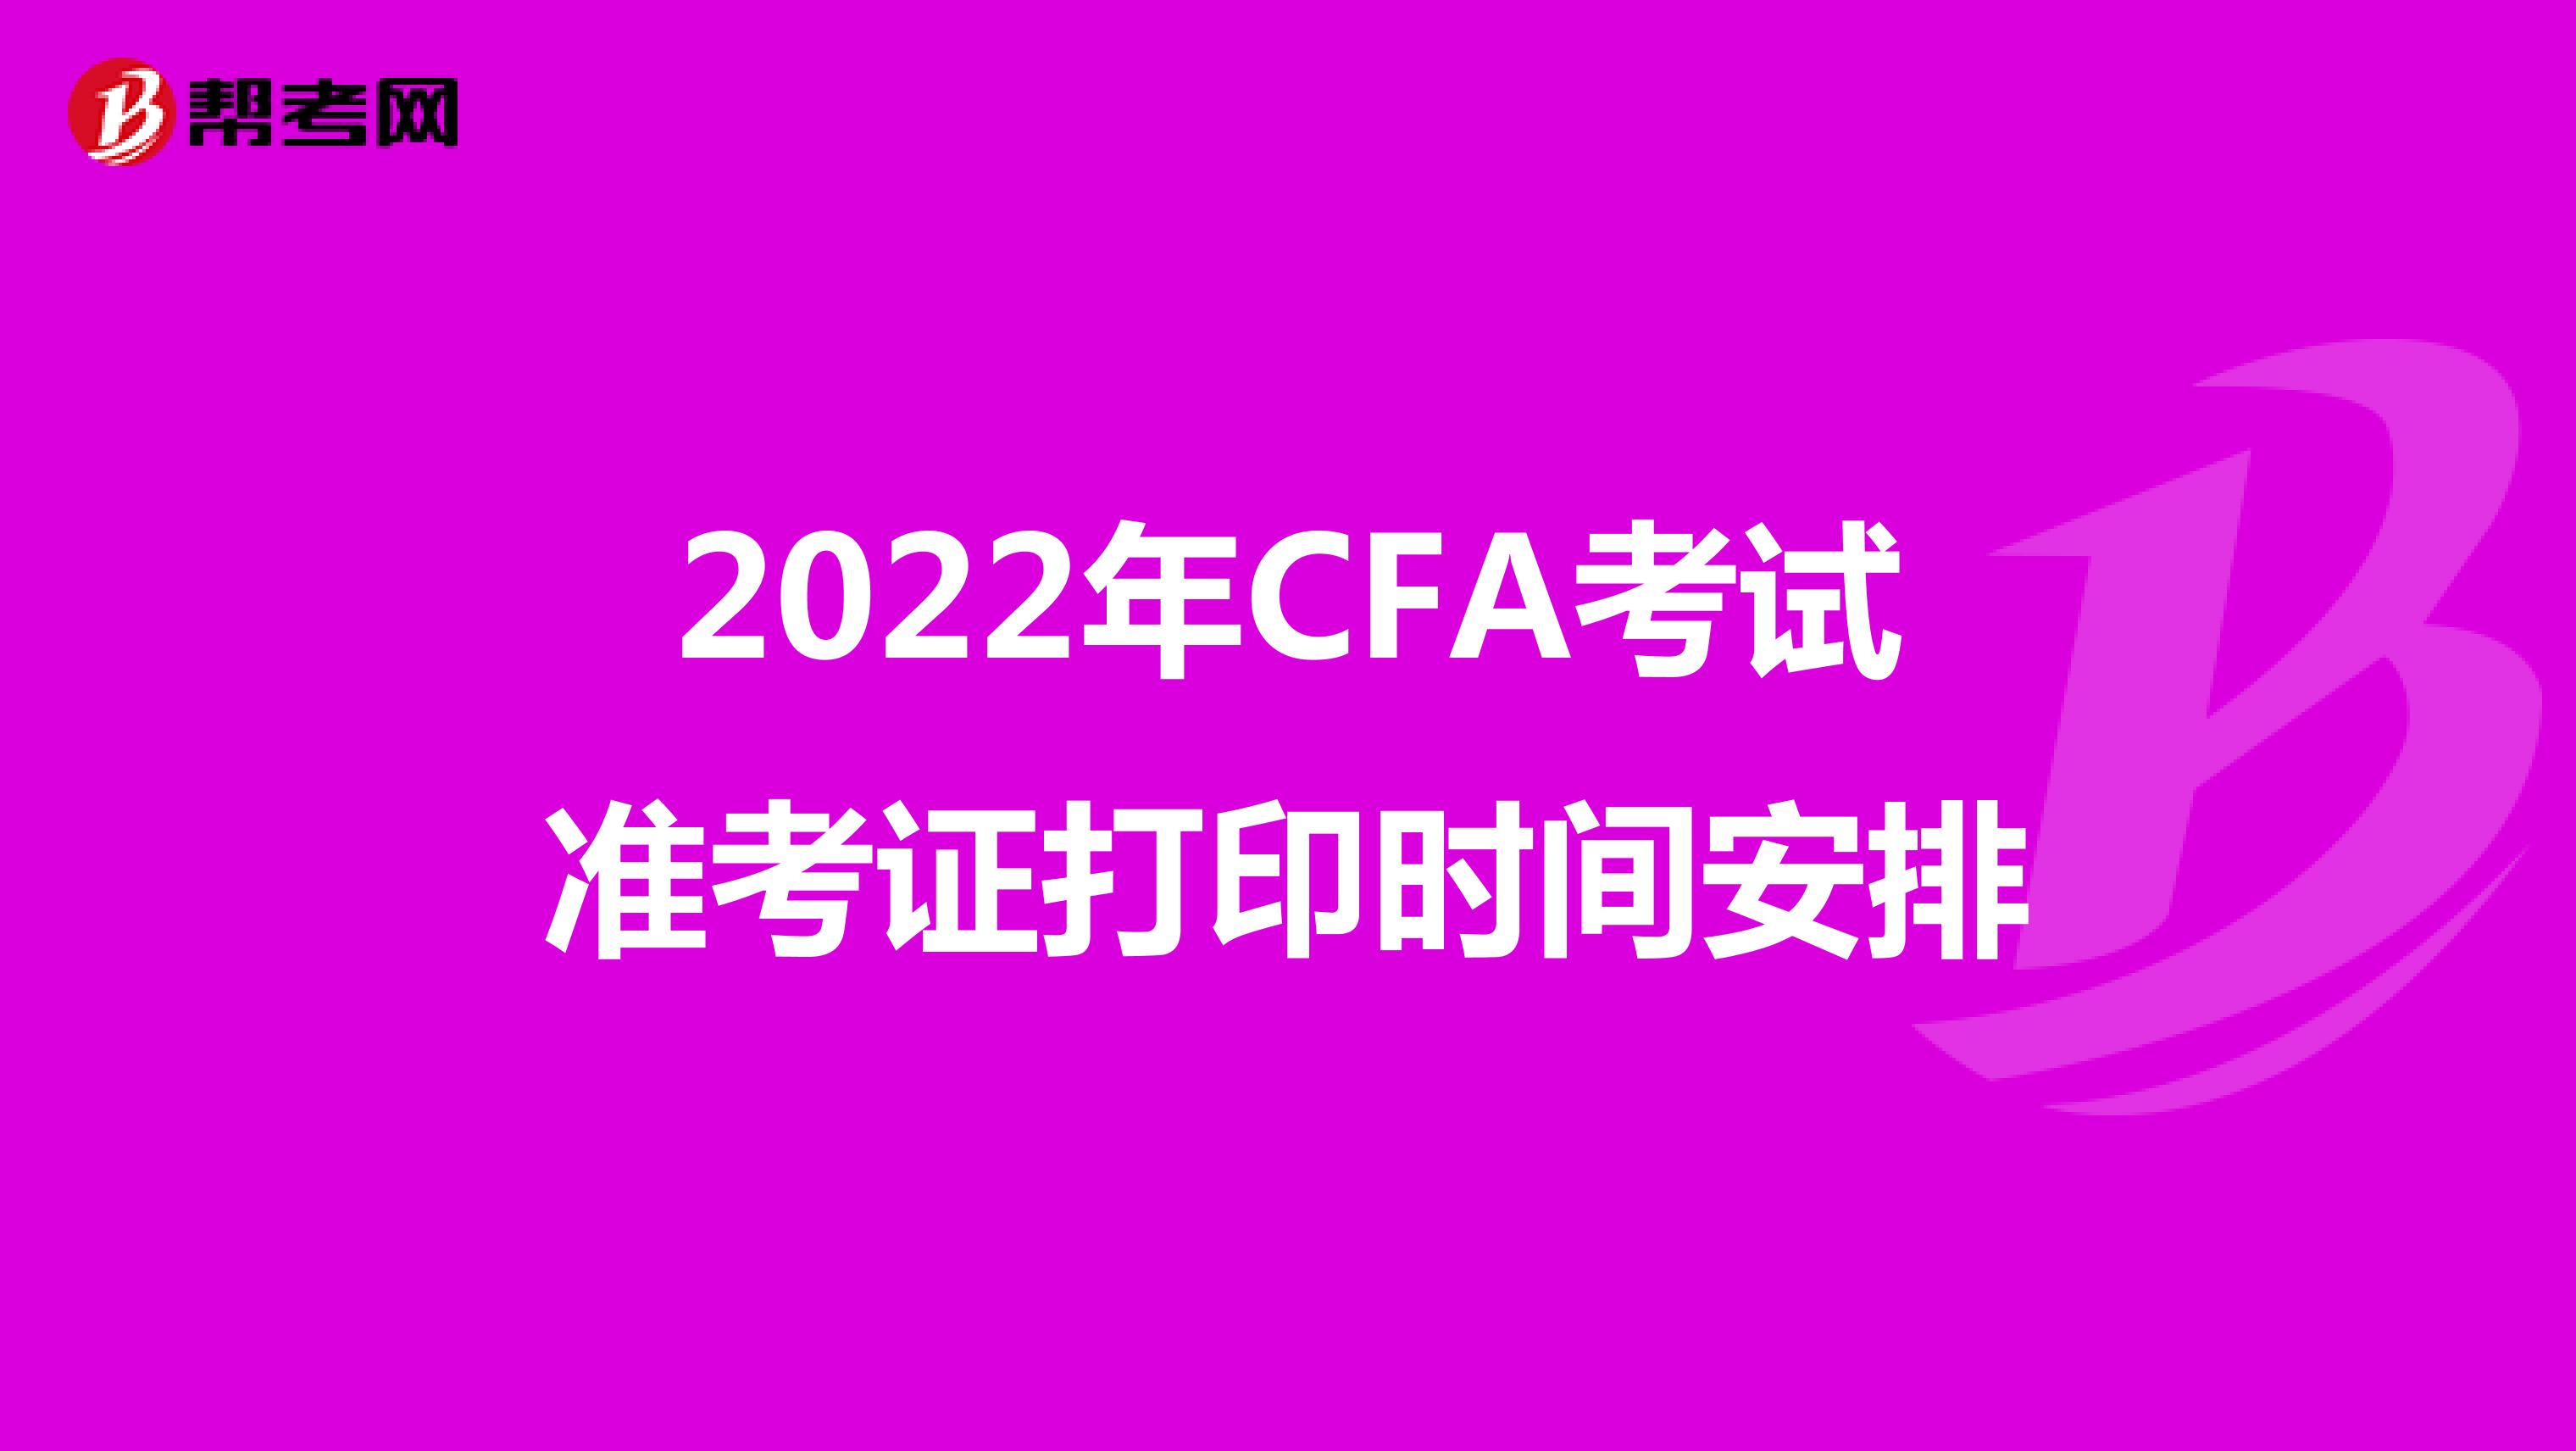 2022年CFA考试准考证打印时间安排